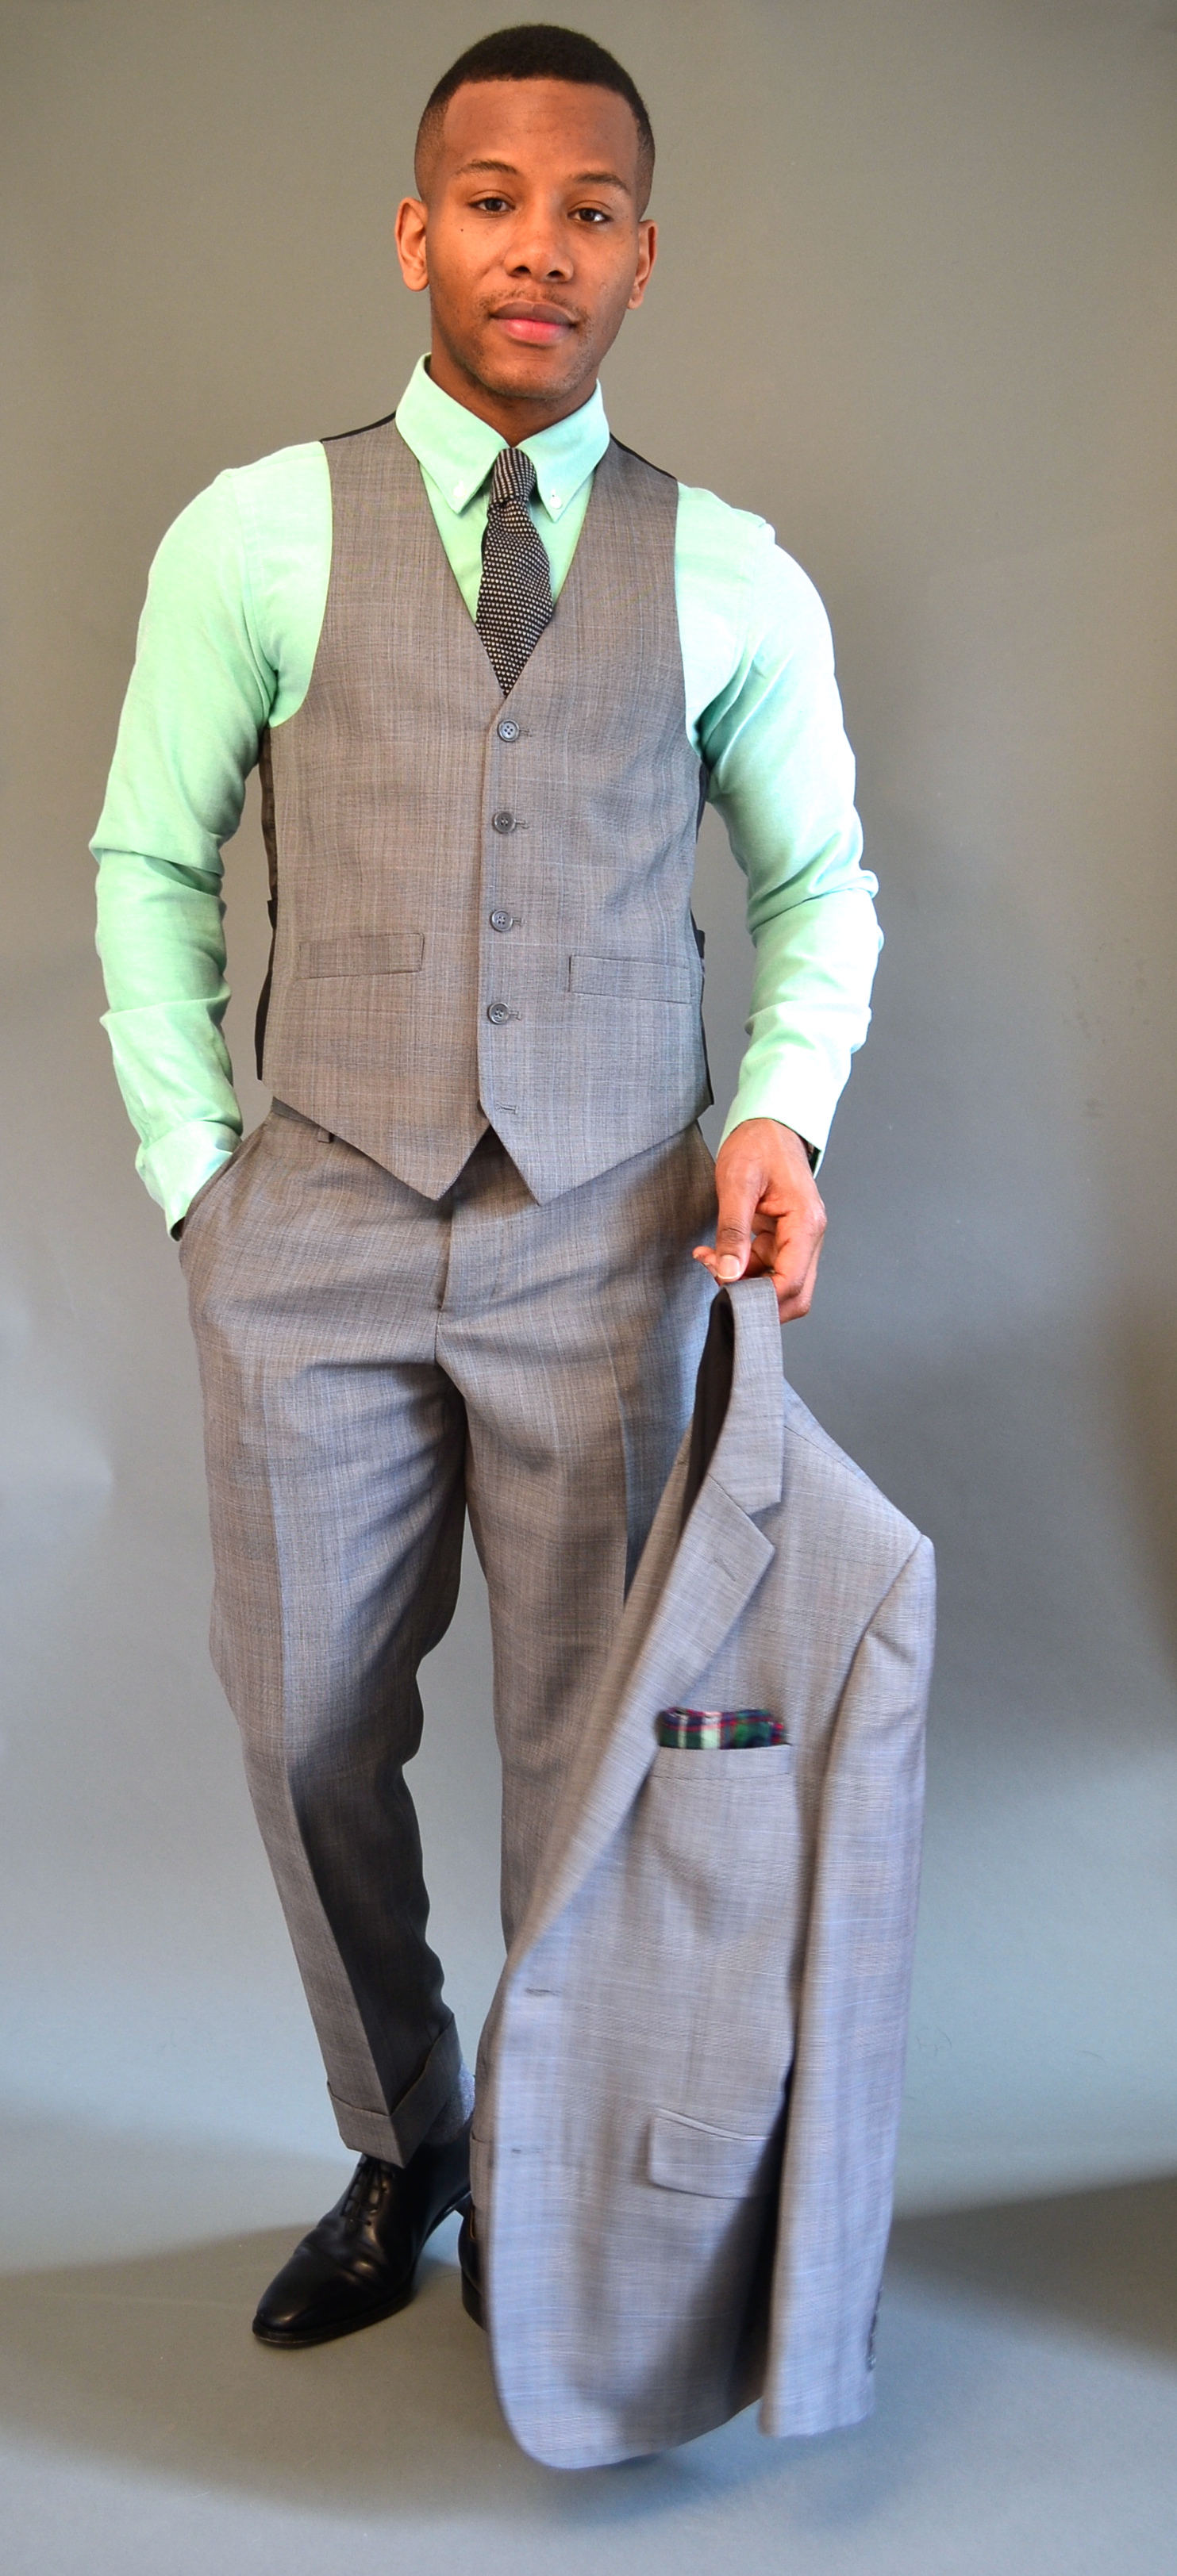 Combatant Gent Suit Review - Men's Style Pro